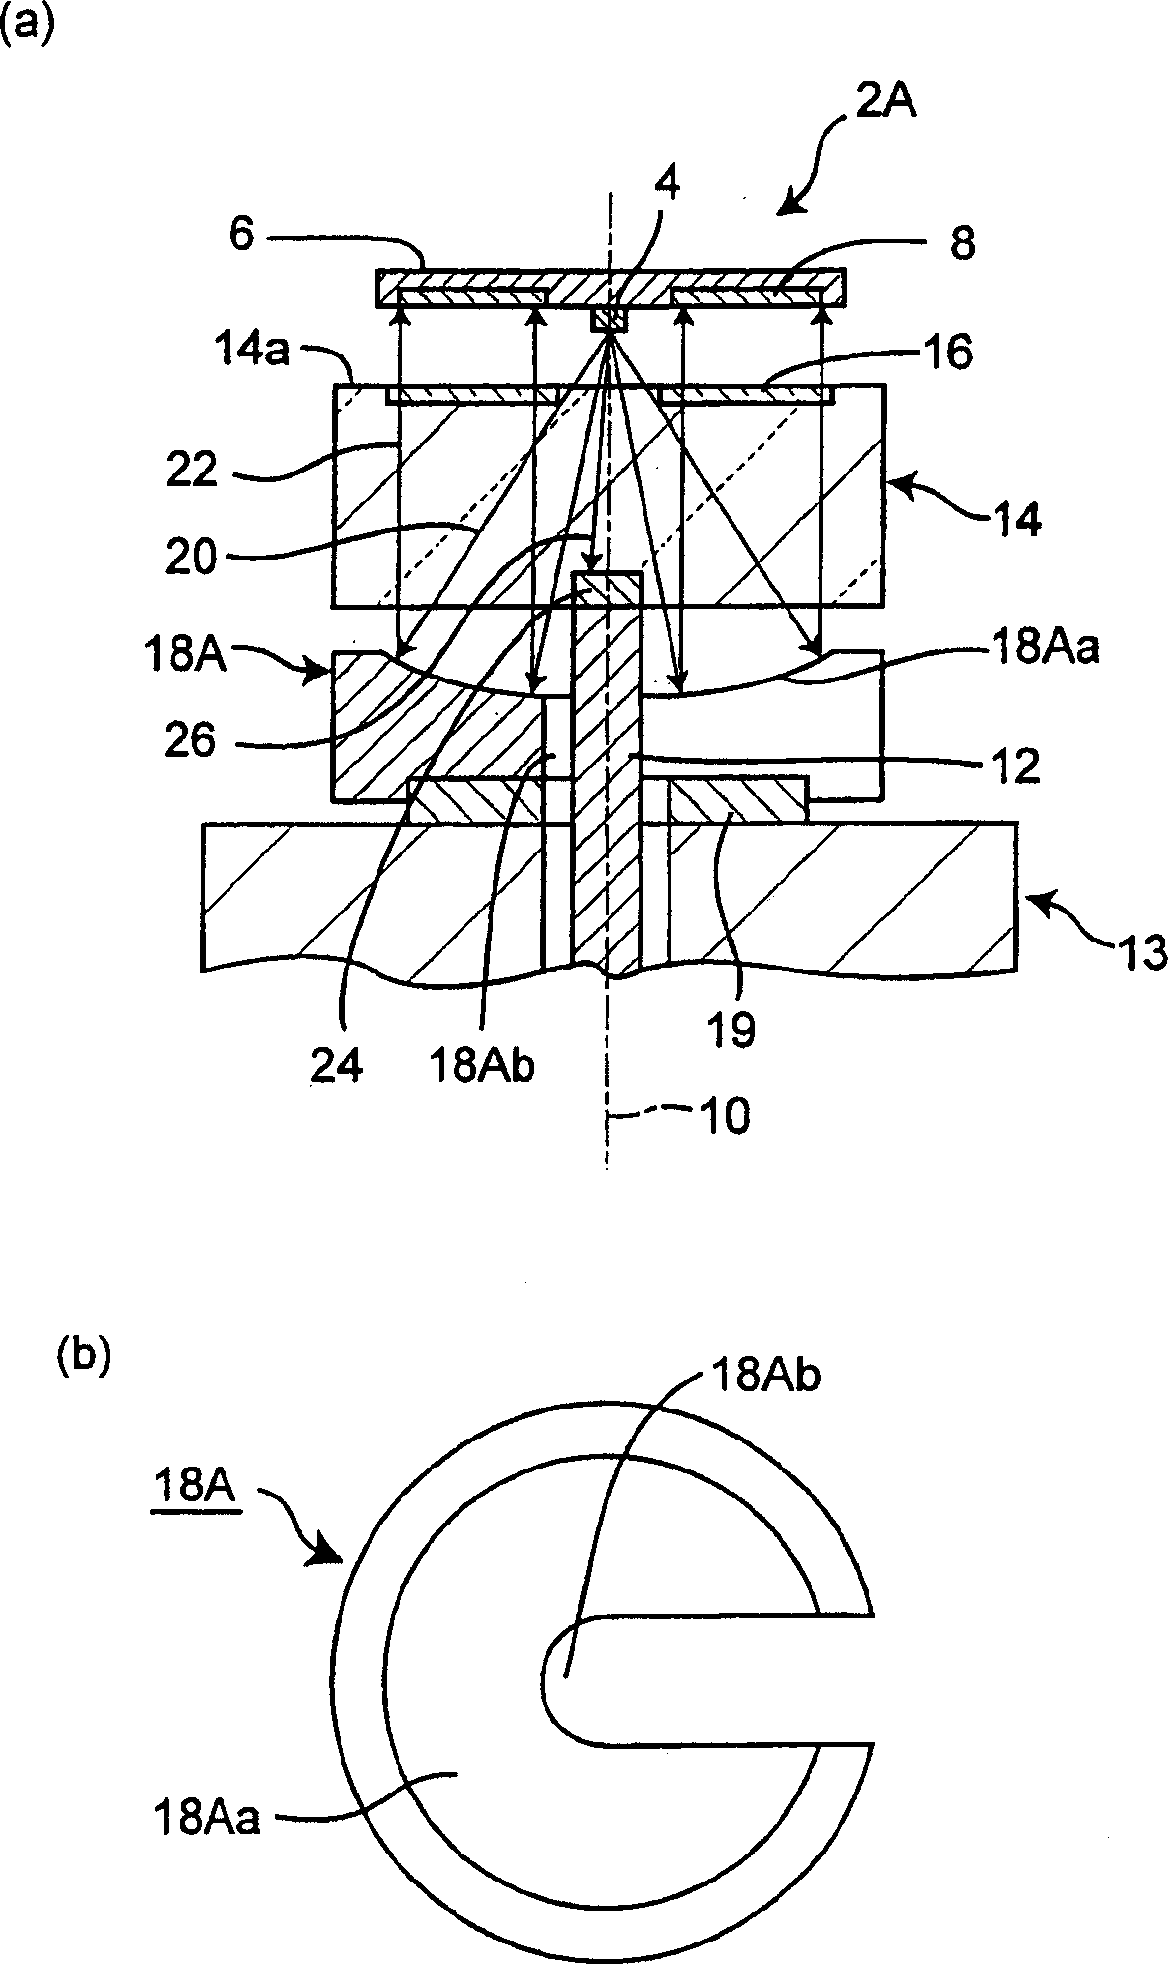 Optical rotary coder